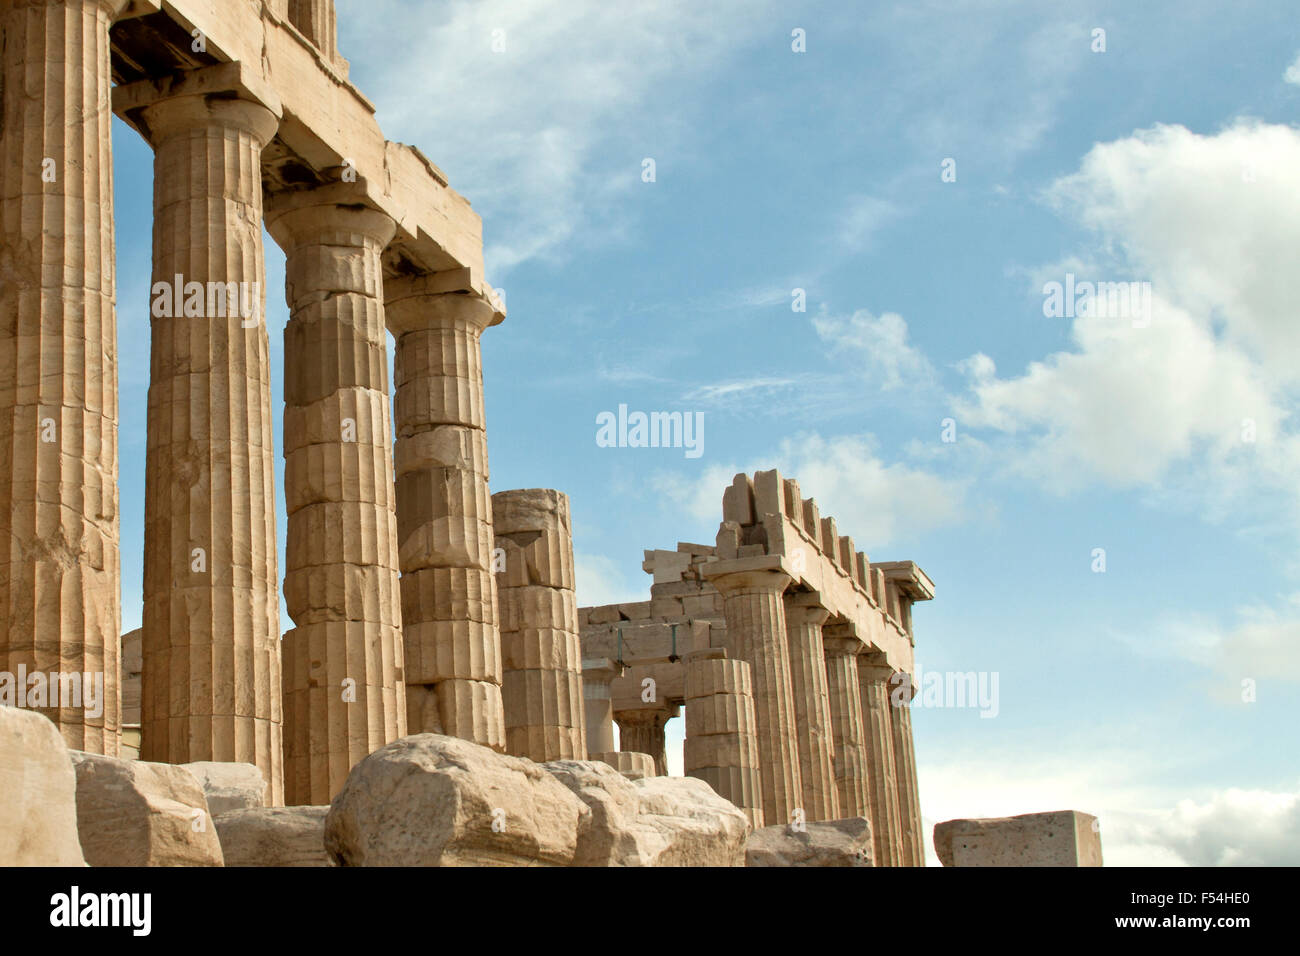 Athens, Greece- September 22,2015: Parthenon temple on the Acropolis in Athens, Greece Stock Photo